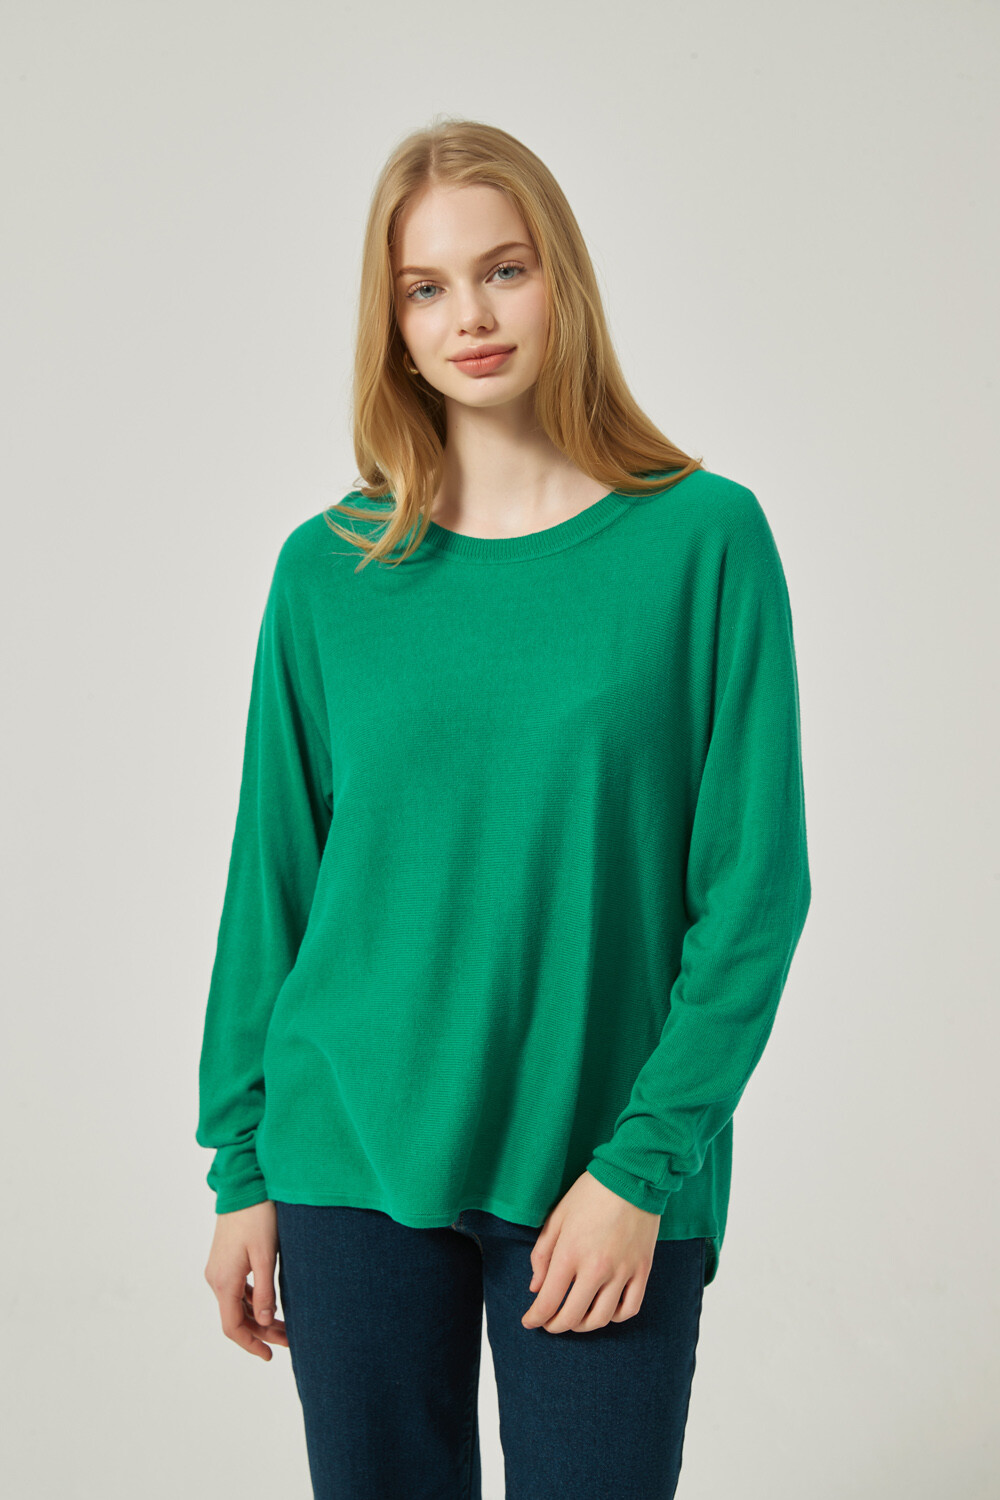 Sweater Greens Menta